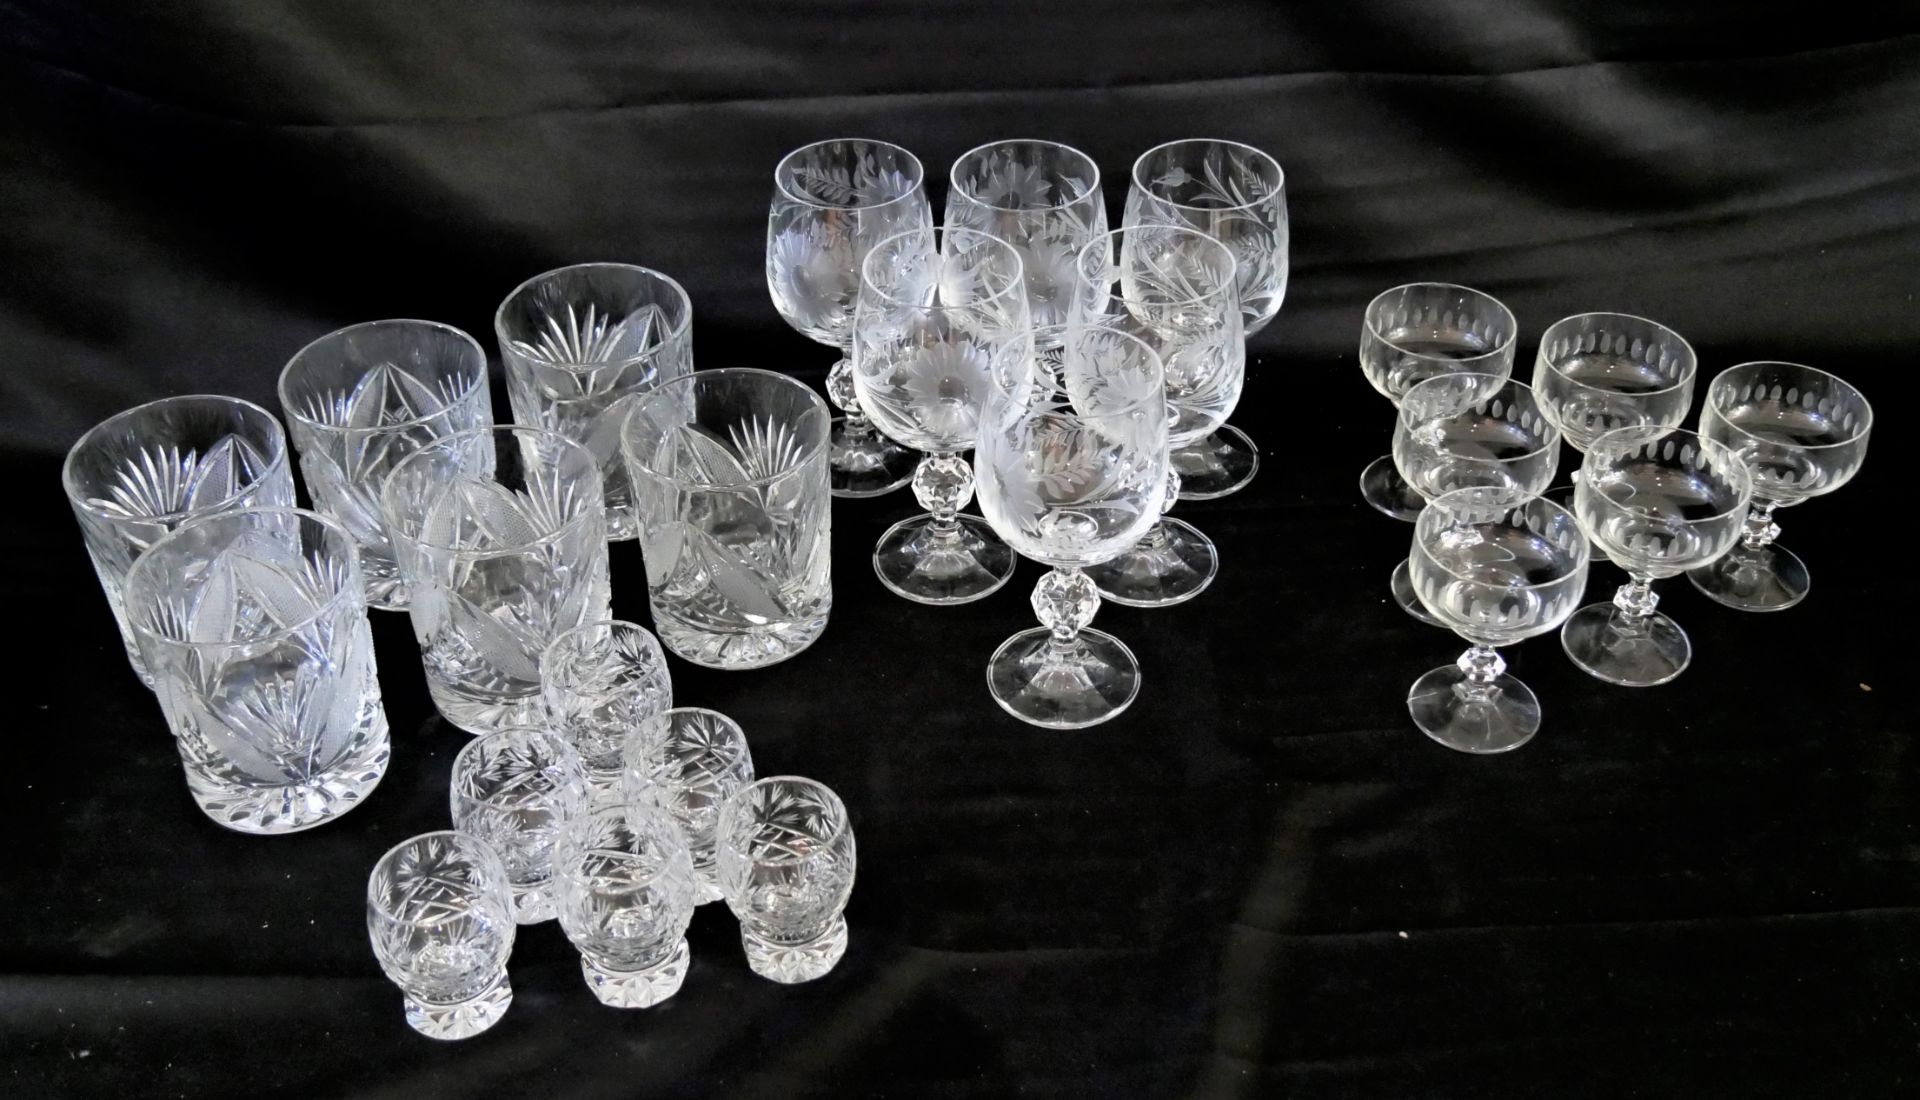 Lot Kristallglas, bestehend aus 6 Likörgläser, 6 Schnapsgläser, 6 Whiskygläser, 6 Weingläser.